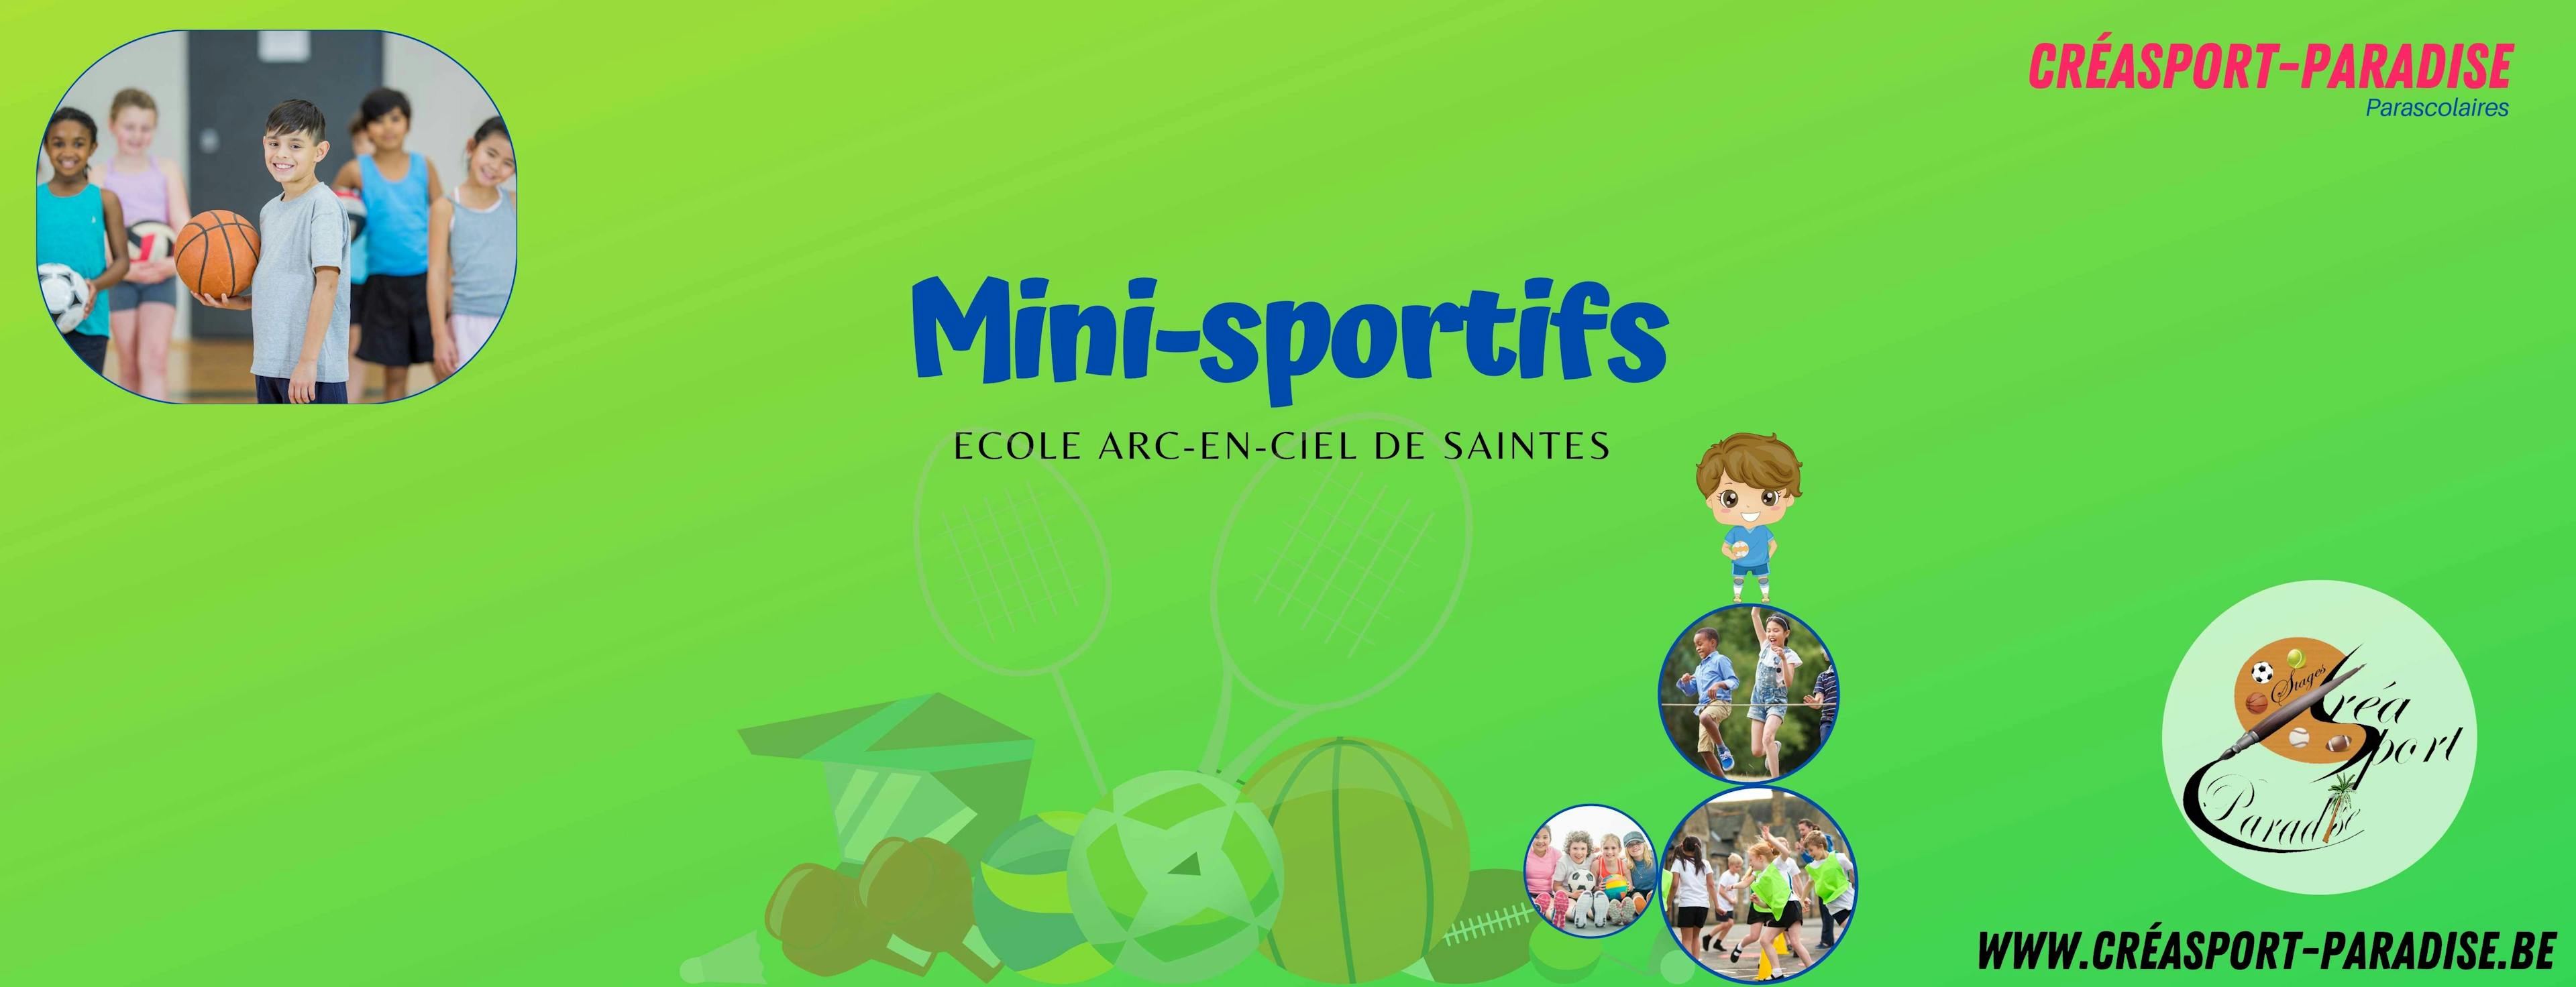 Parascolaires Ecole de Saintes - 15h20 JEUDI - Mini Sportifs